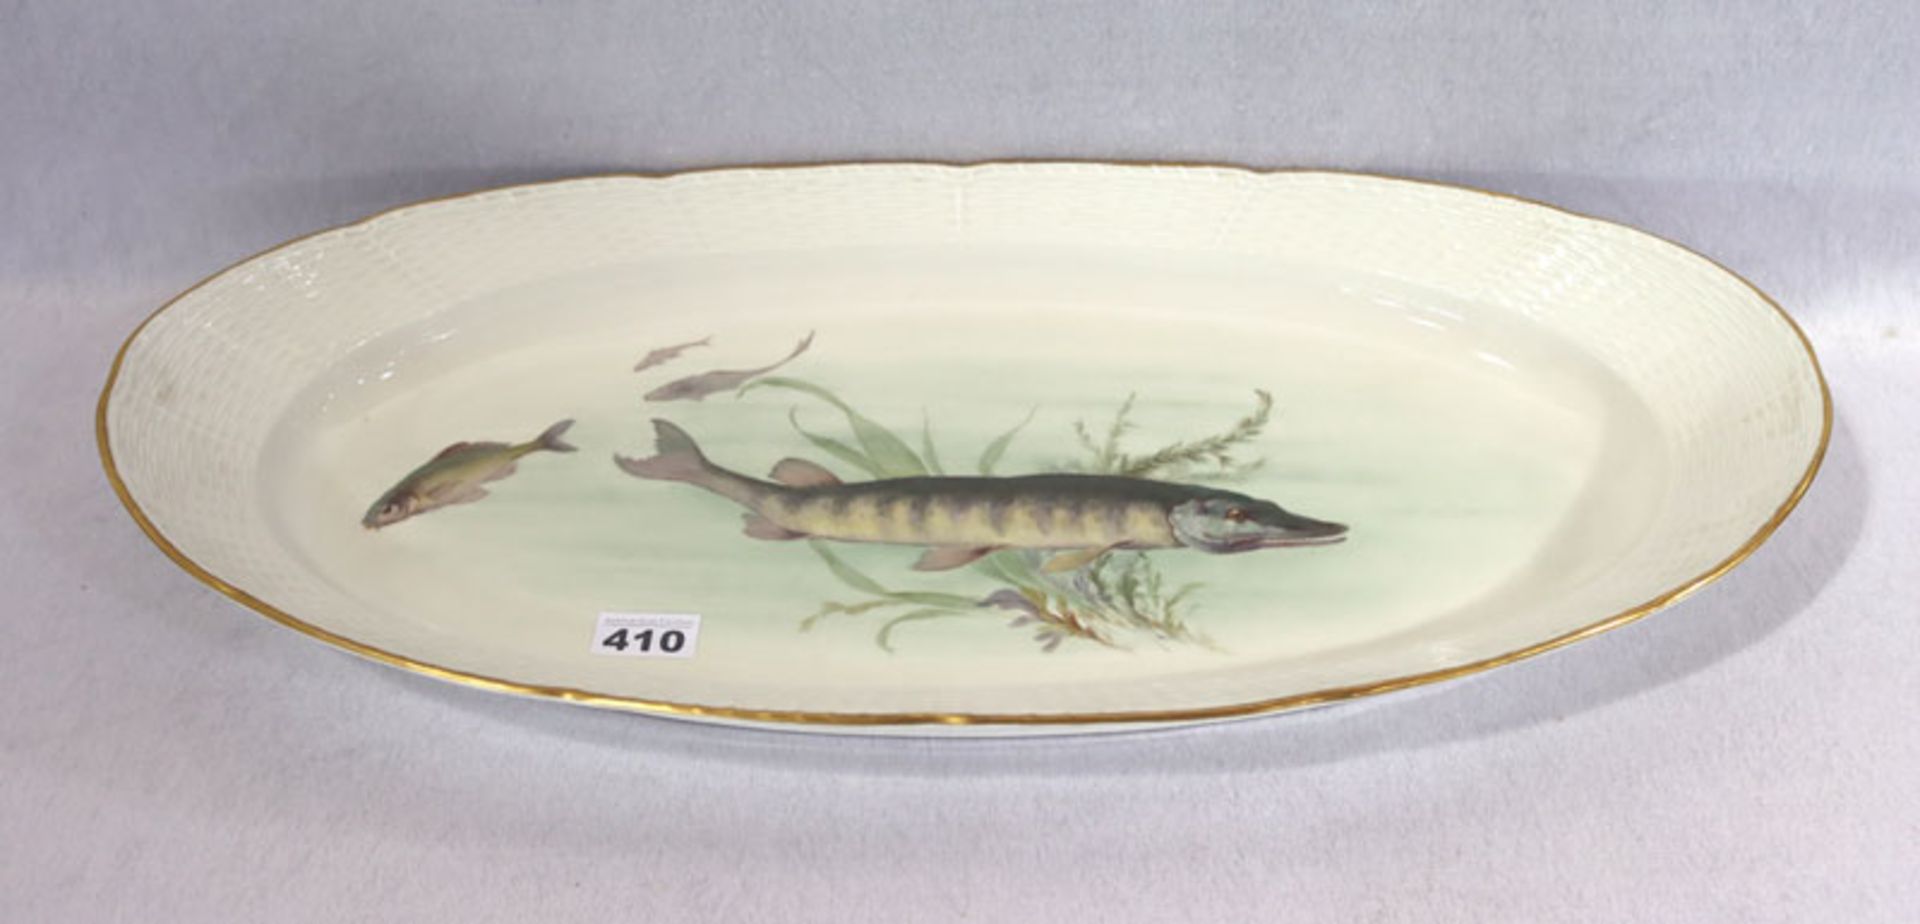 KPM Porzellan Fischplatte mit reliefiertem Flechtrand, bemaltem Fischdekor und Goldrand, am Rand